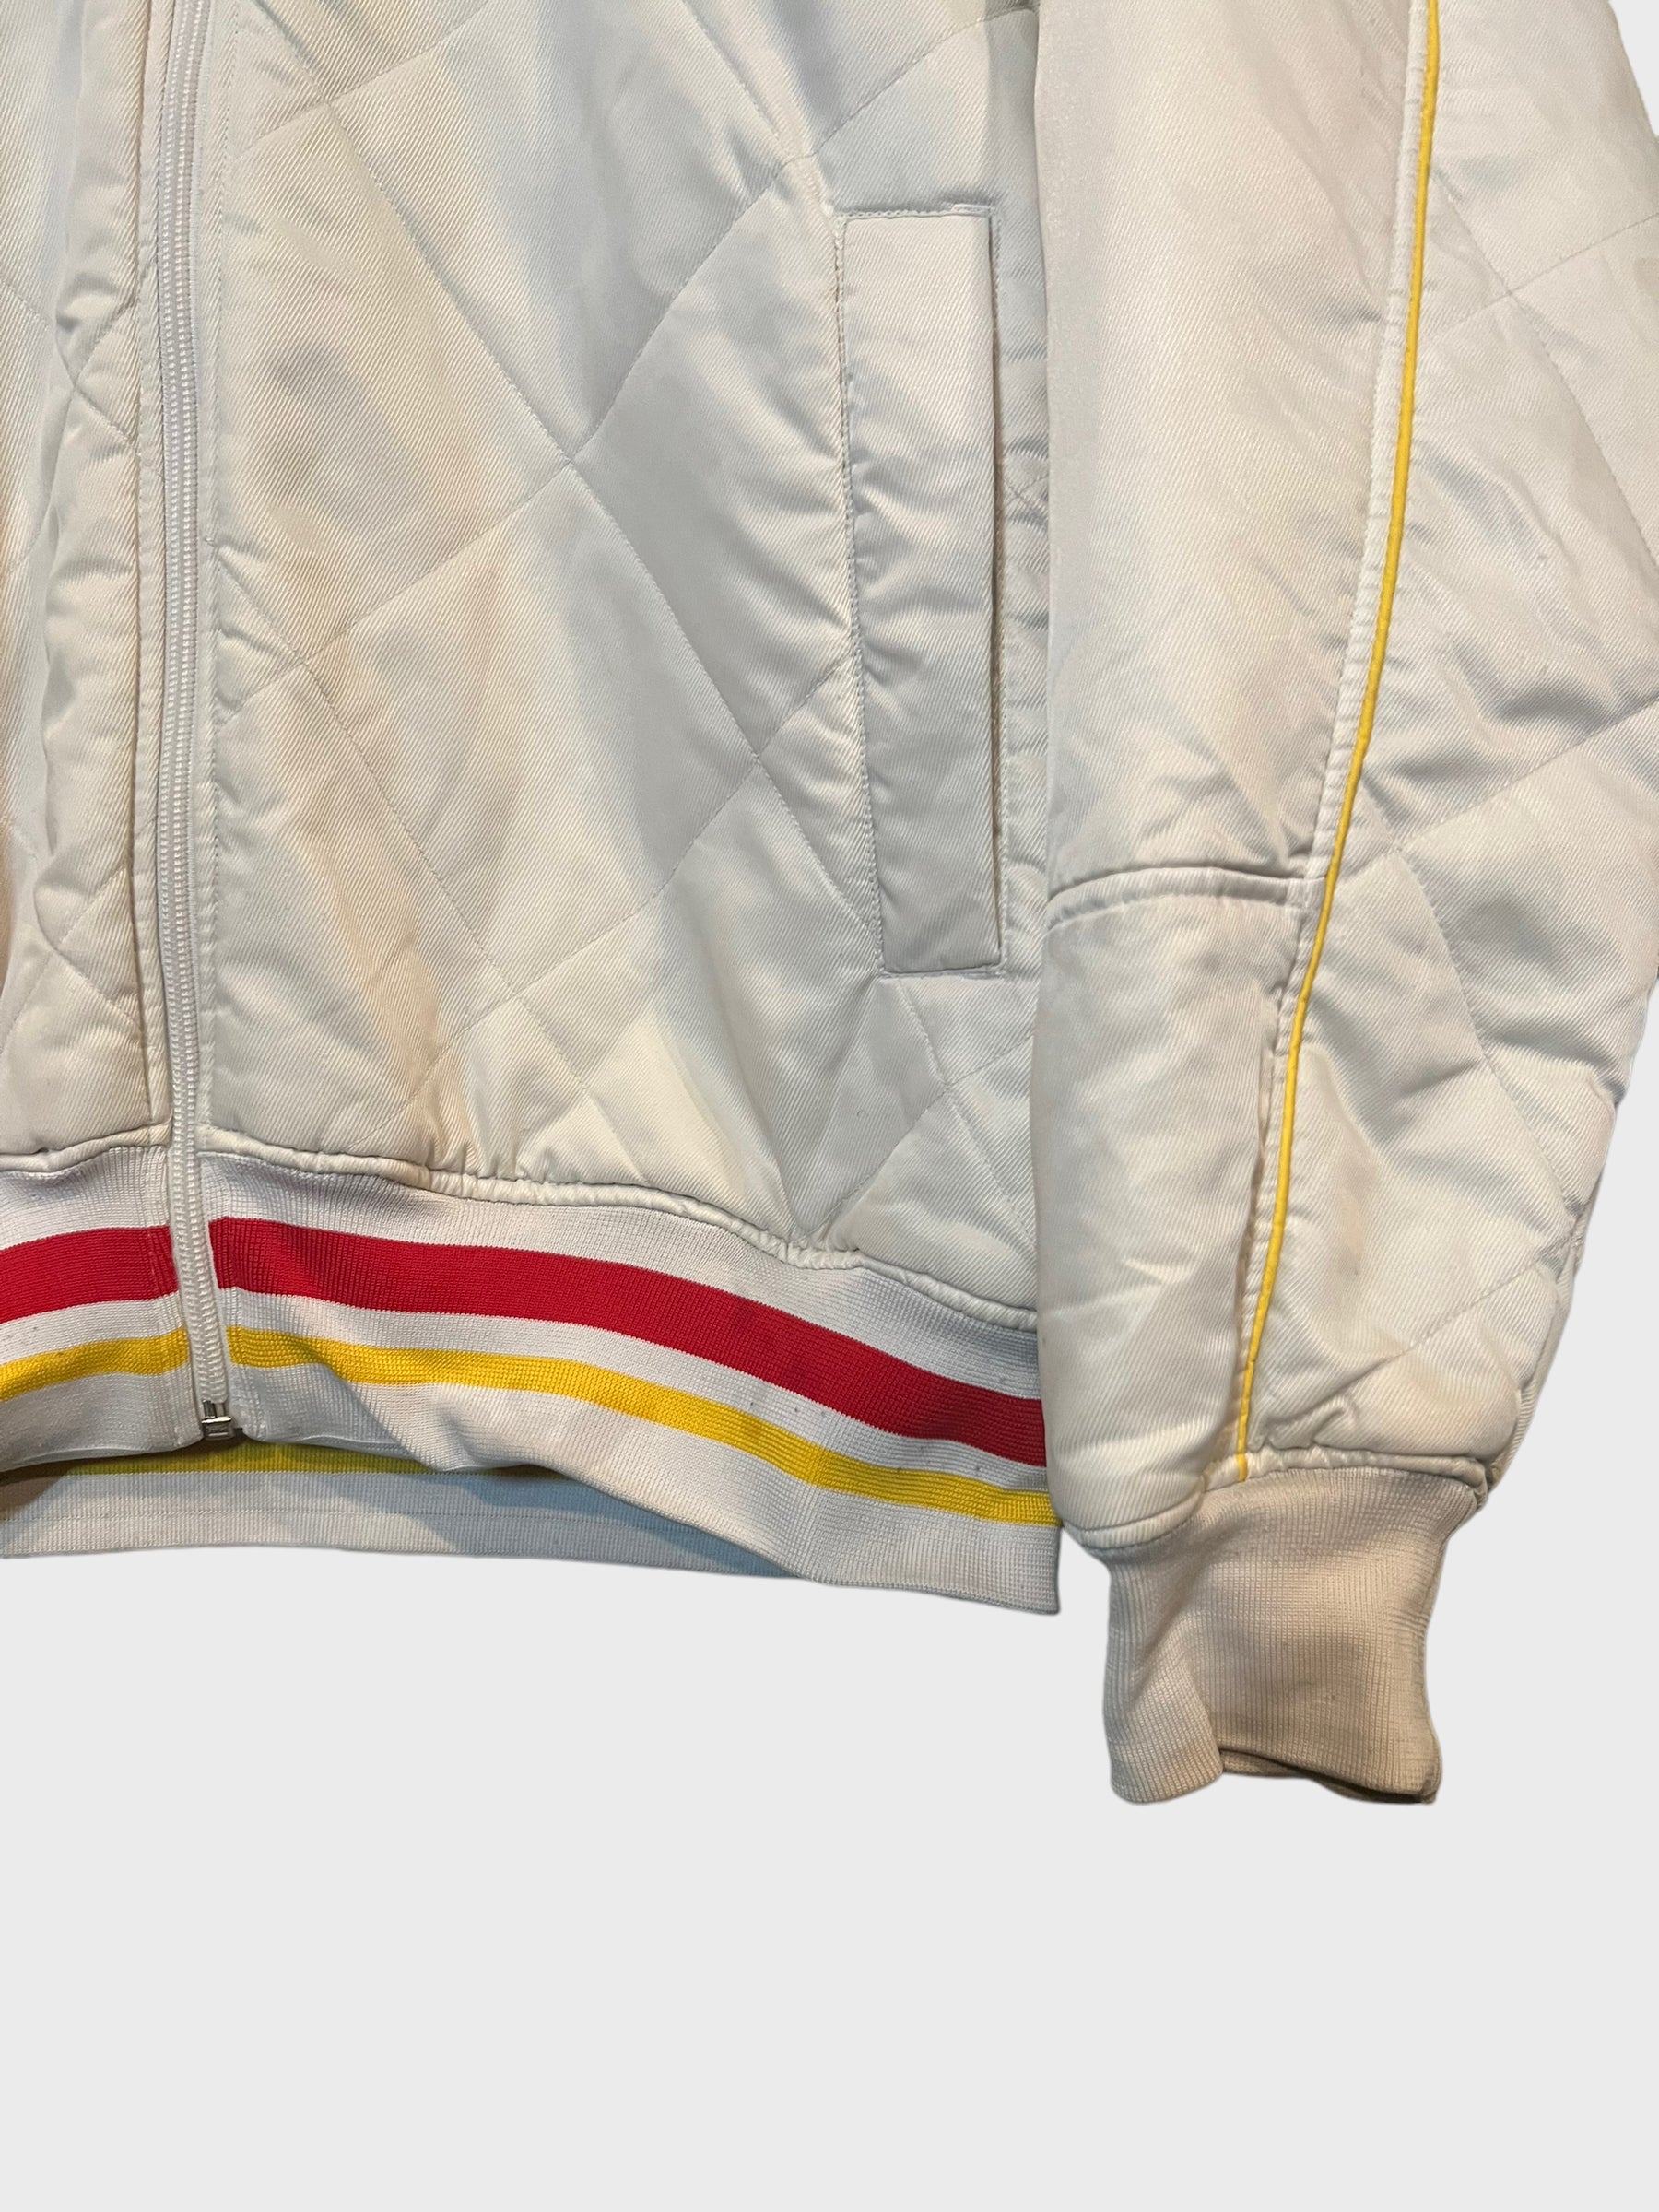 Nike Vintage Bomber Jacket